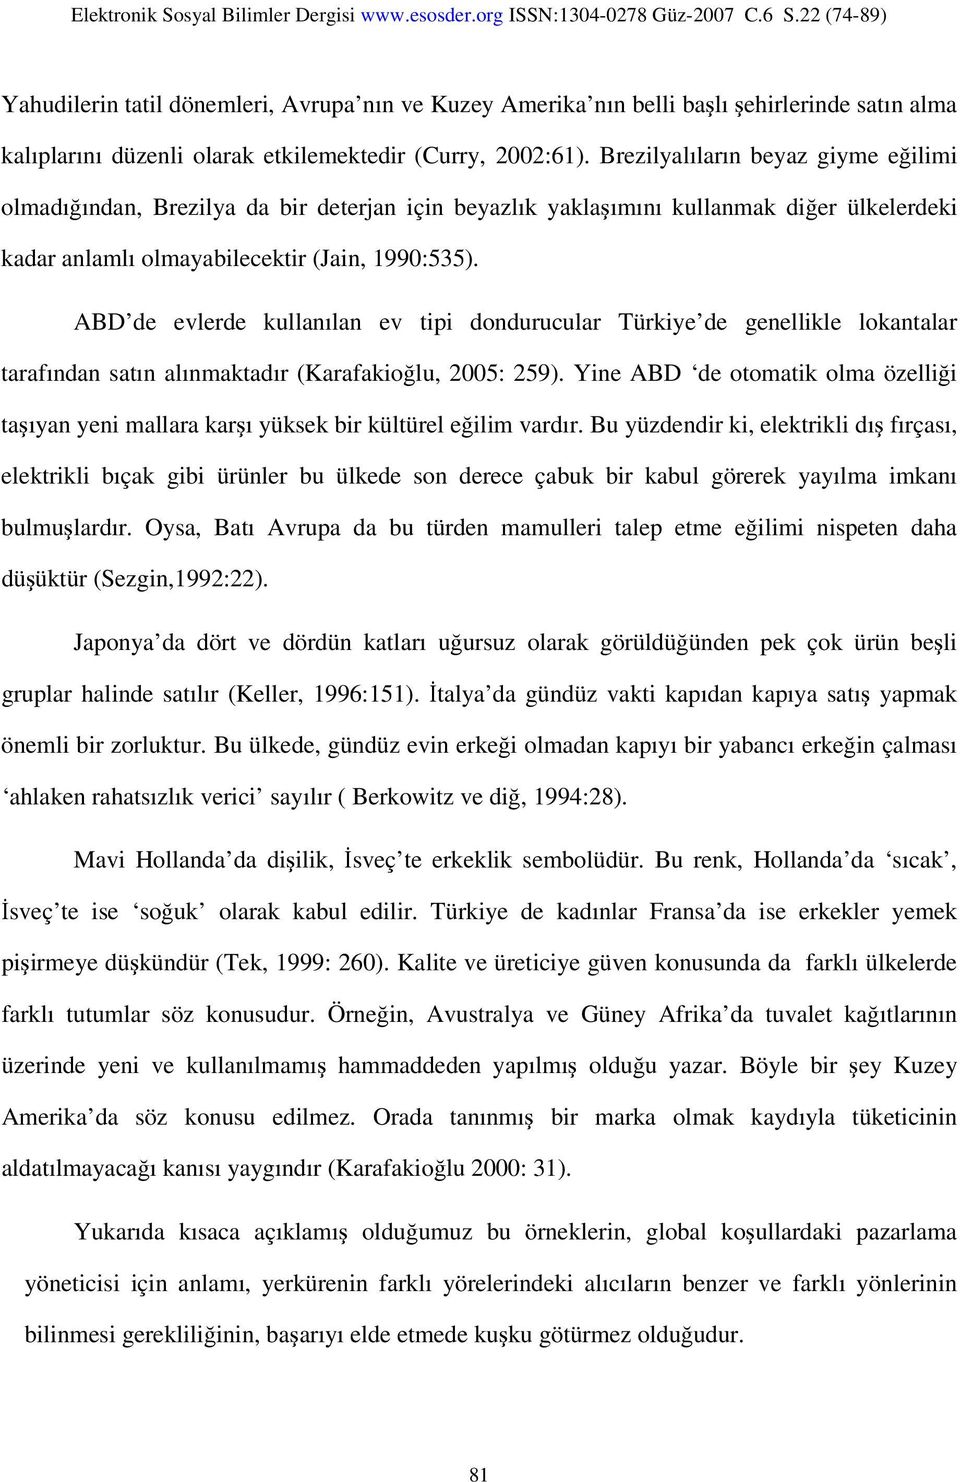 ABD de evlerde kullanılan ev tipi dondurucular Türkiye de genellikle lokantalar tarafından satın alınmaktadır (Karafakioğlu, 2005: 259).